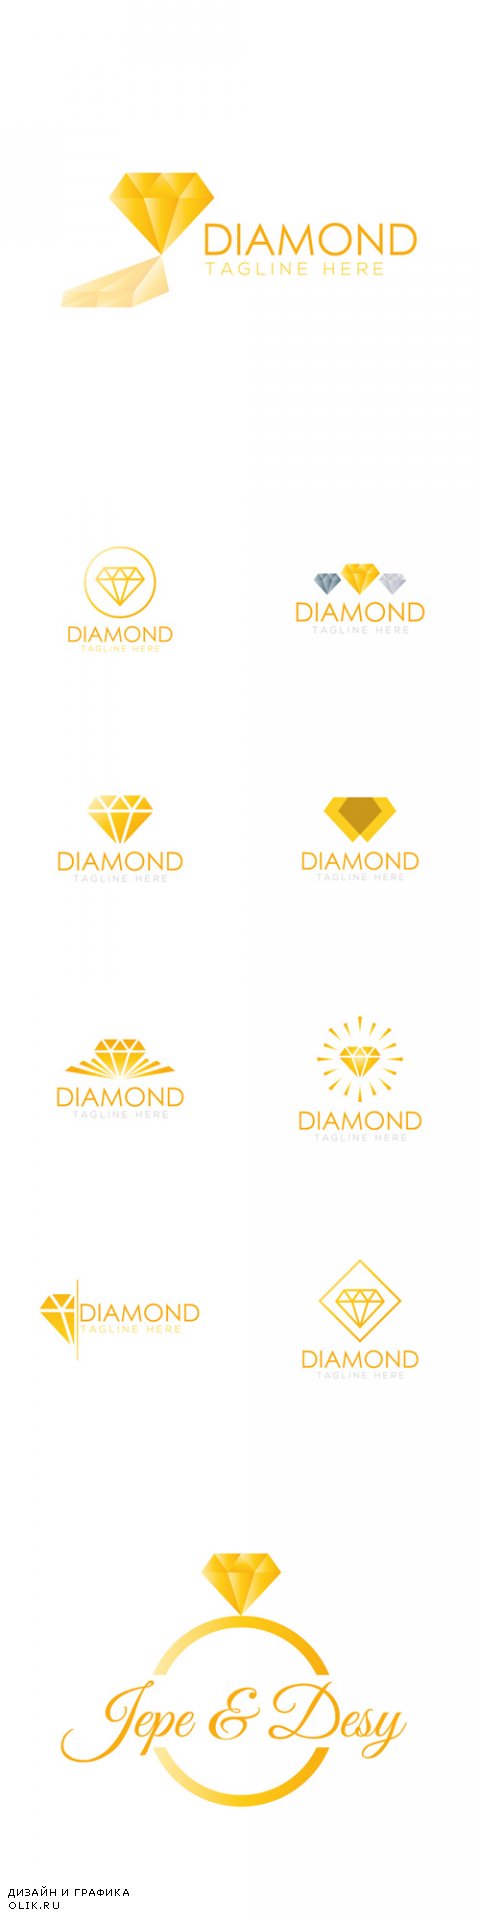 Vector Diamond Logo Creative Design